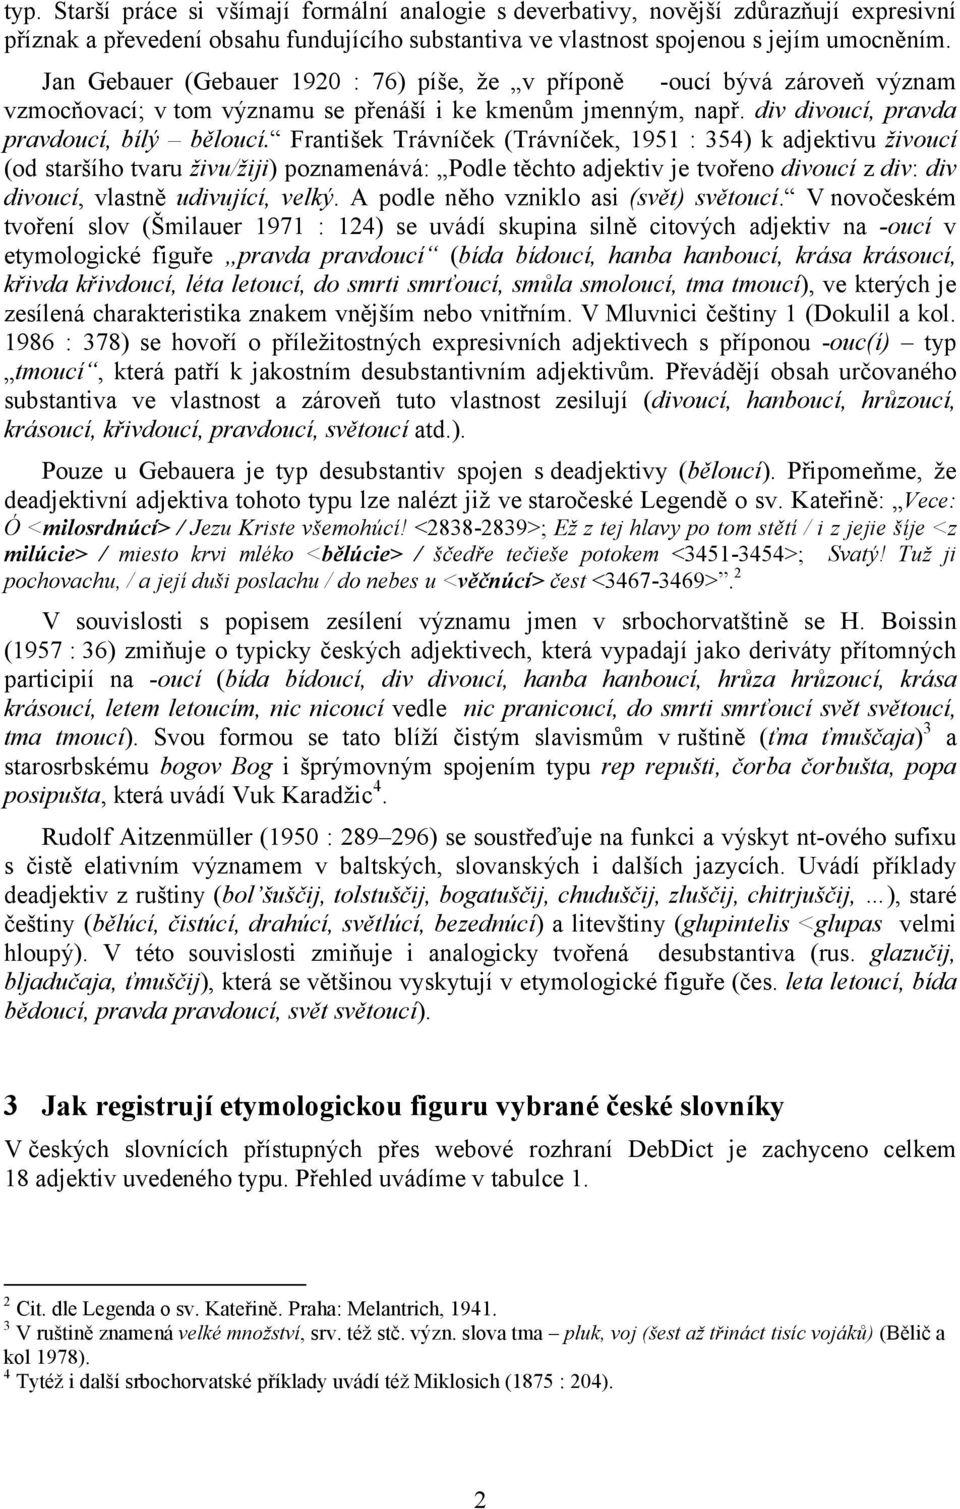 František Trávníček (Trávníček, 1951 : 354) k adjektivu živoucí (od staršího tvaru živu/žiji) poznamenává: Podle těchto adjektiv je tvořeno divoucí z div: div divoucí, vlastně udivující, velký.